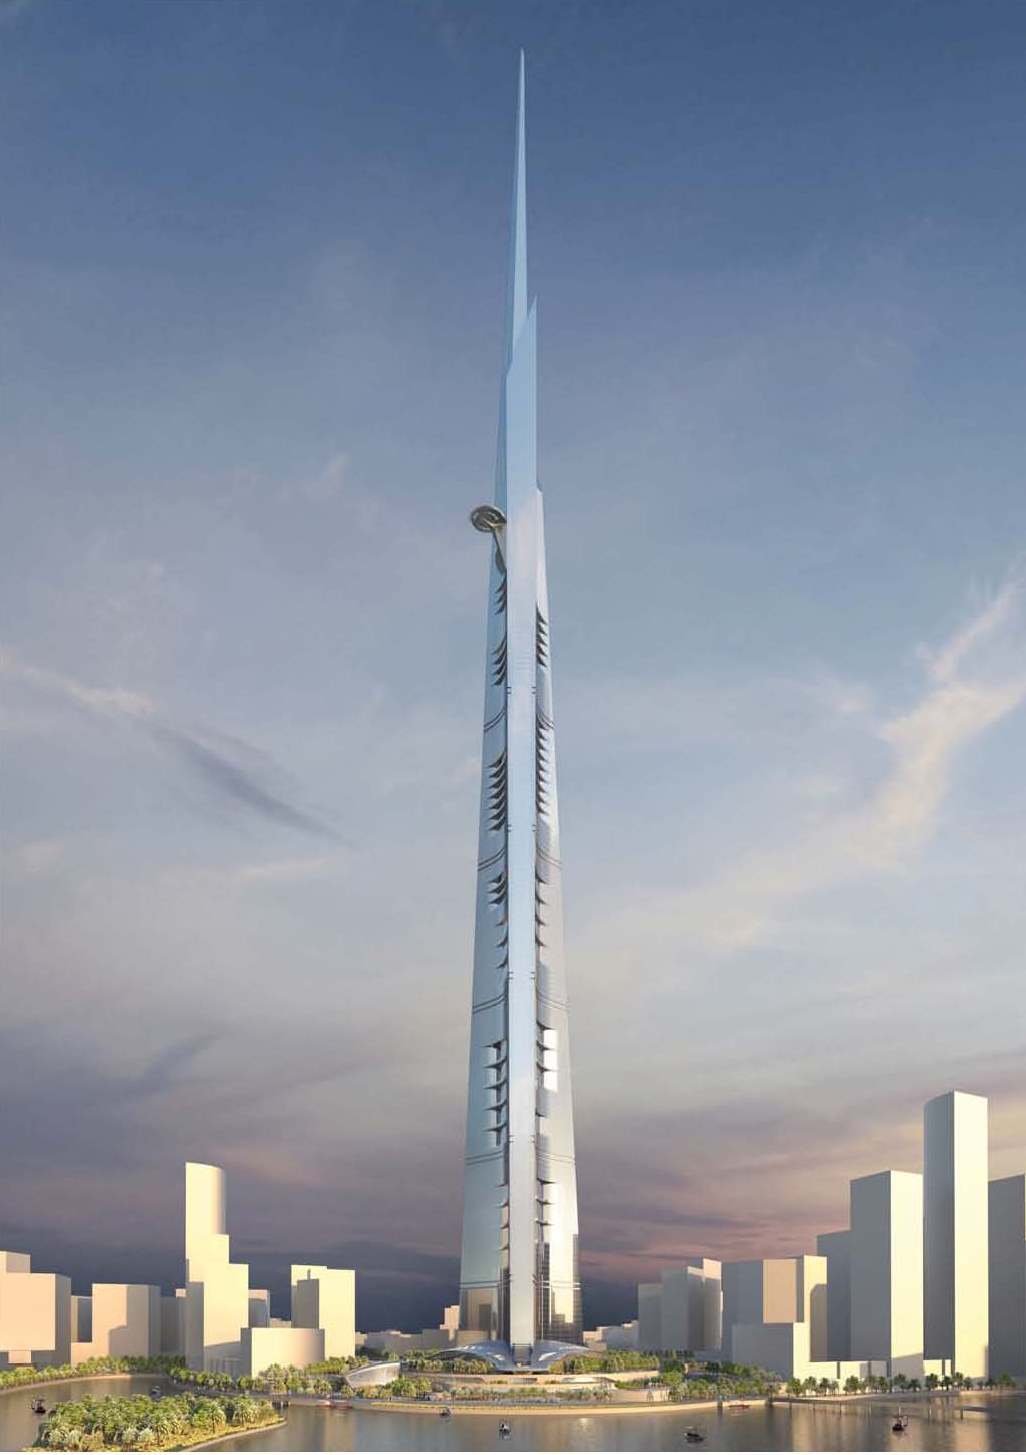 年中完美收官 kk体育
6月斩获世界第一高1007米沙特王国塔